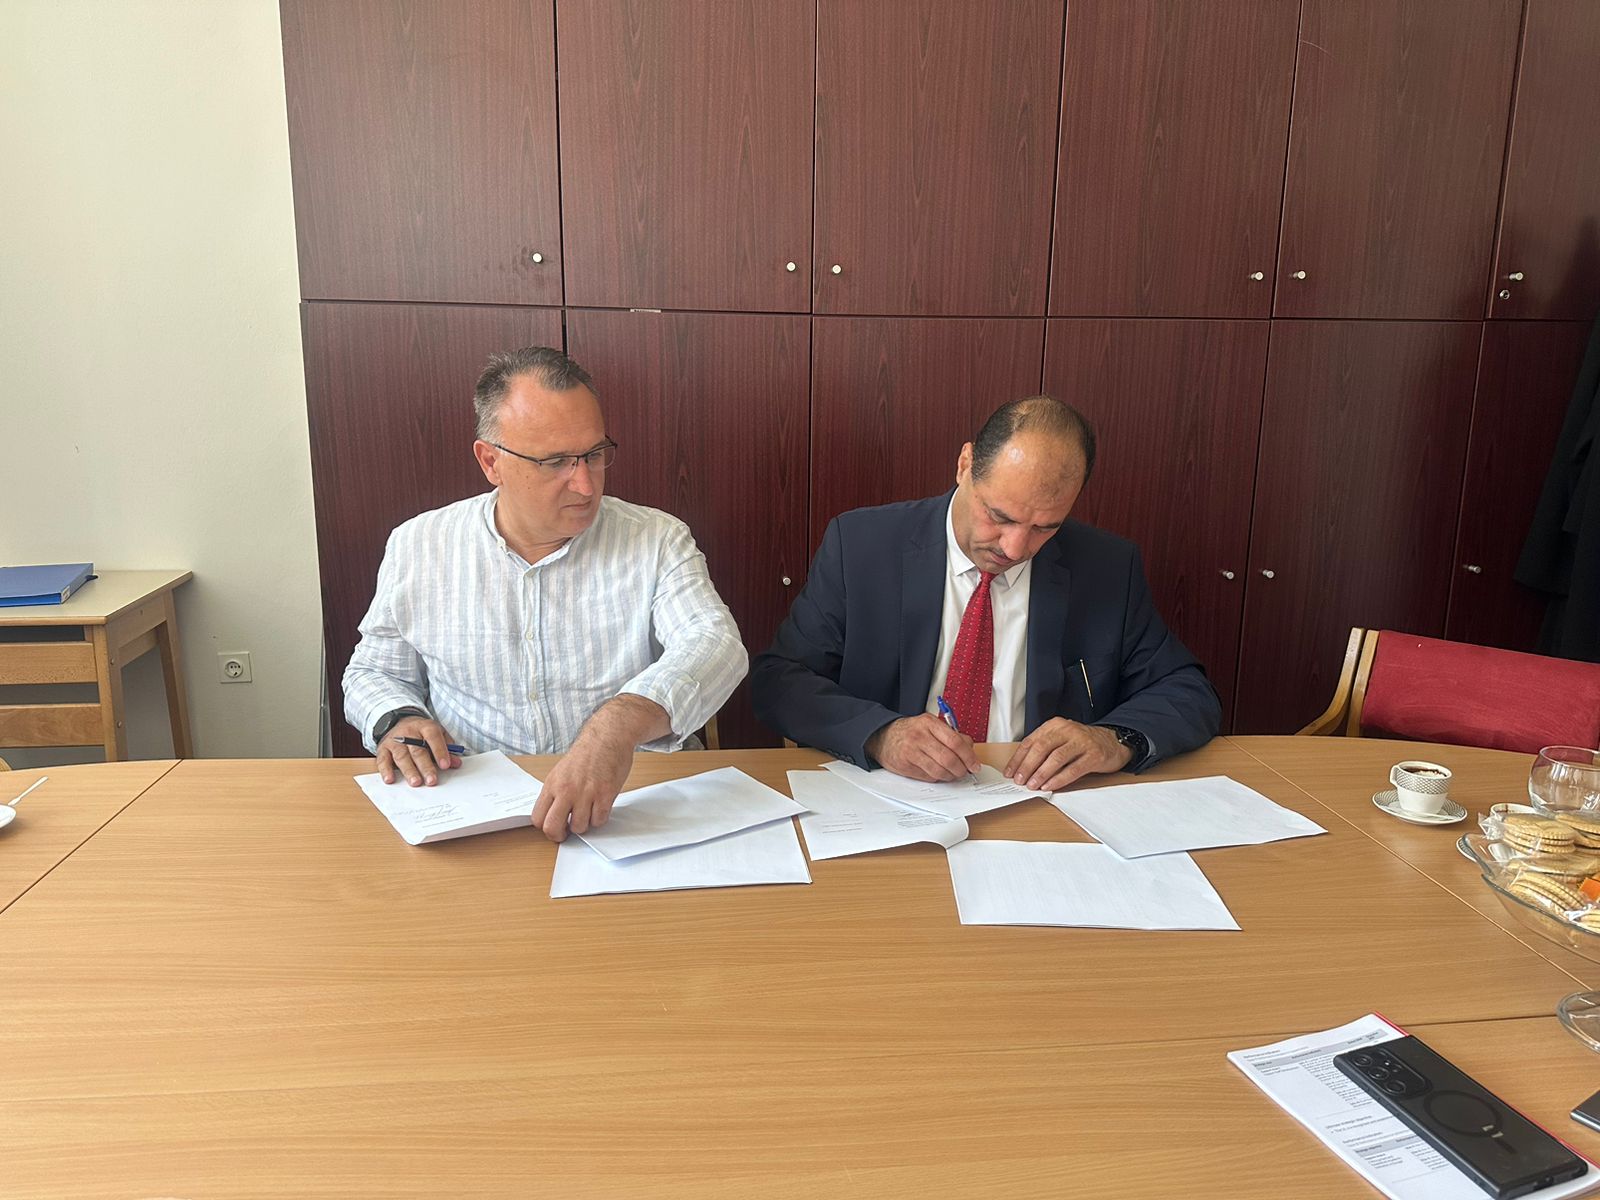 Marrëveshje bashkëpunimi me Universitetin Ndërkombëtar të Gorazhdes/Bosnje dhe Hercegovinë